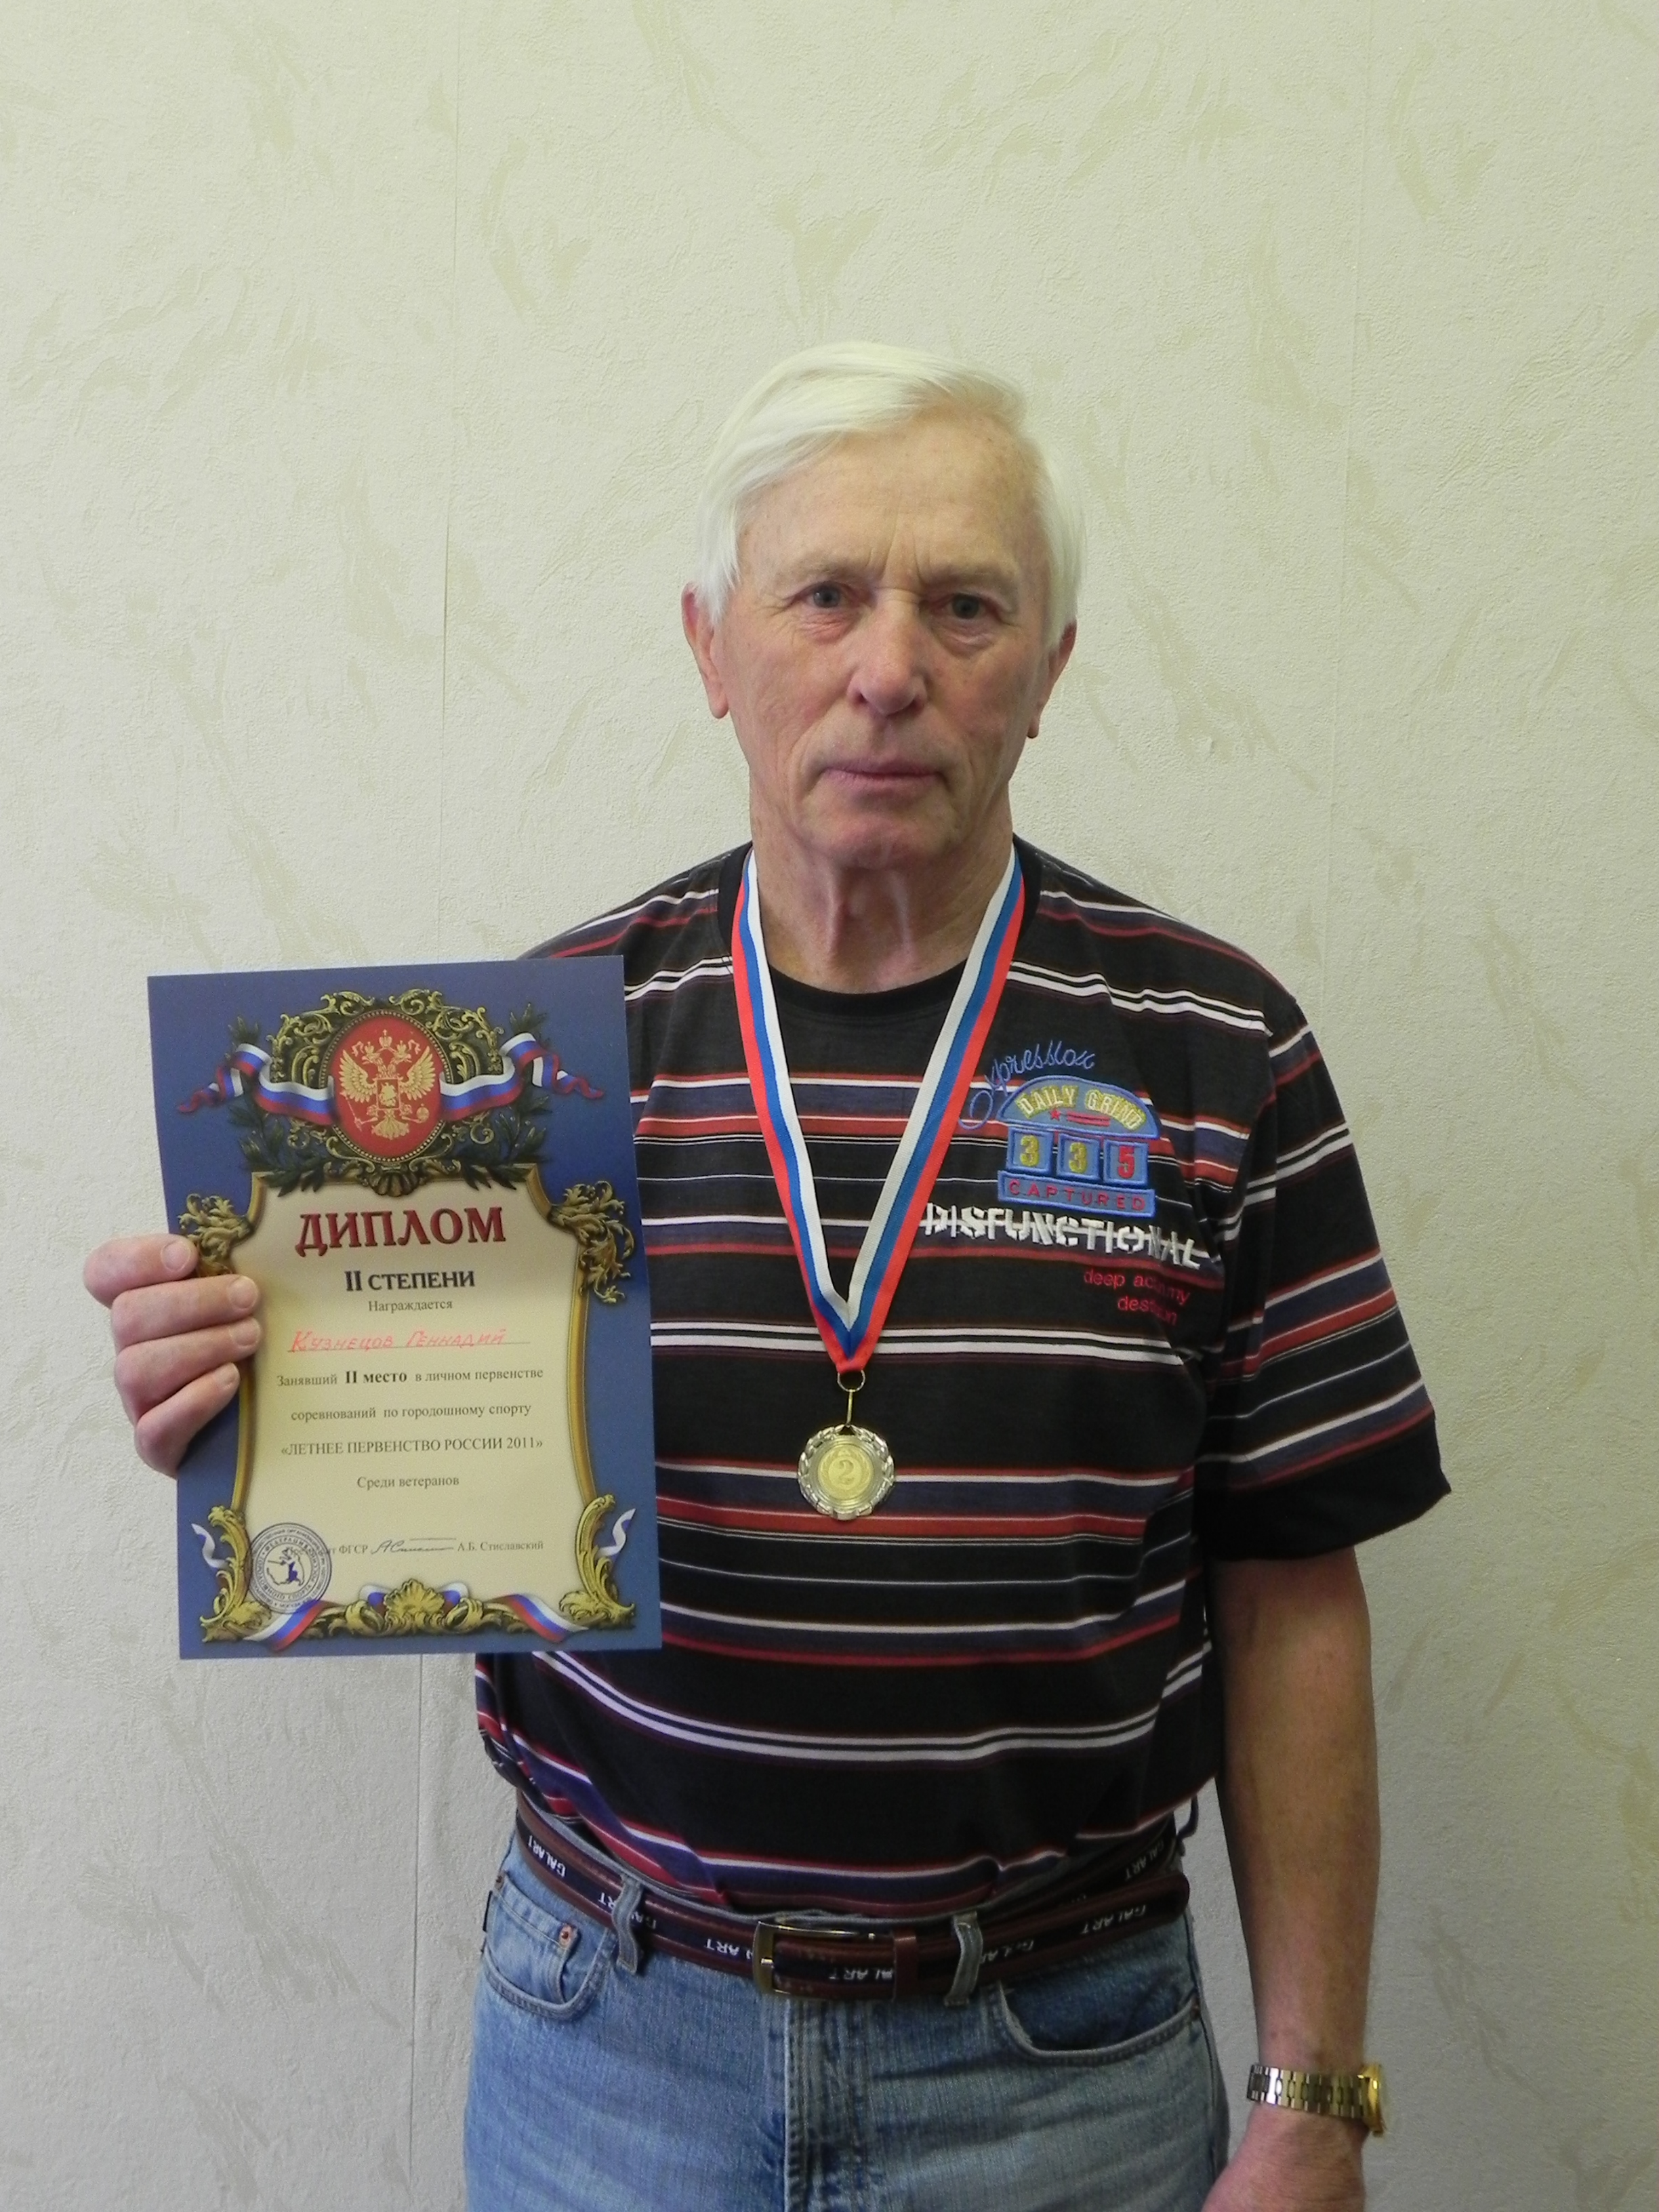 14:53 Геннадий Кузнецов свою серебрянную медаль в первенстве России по городошному спорту посвятил любимой Чувашии